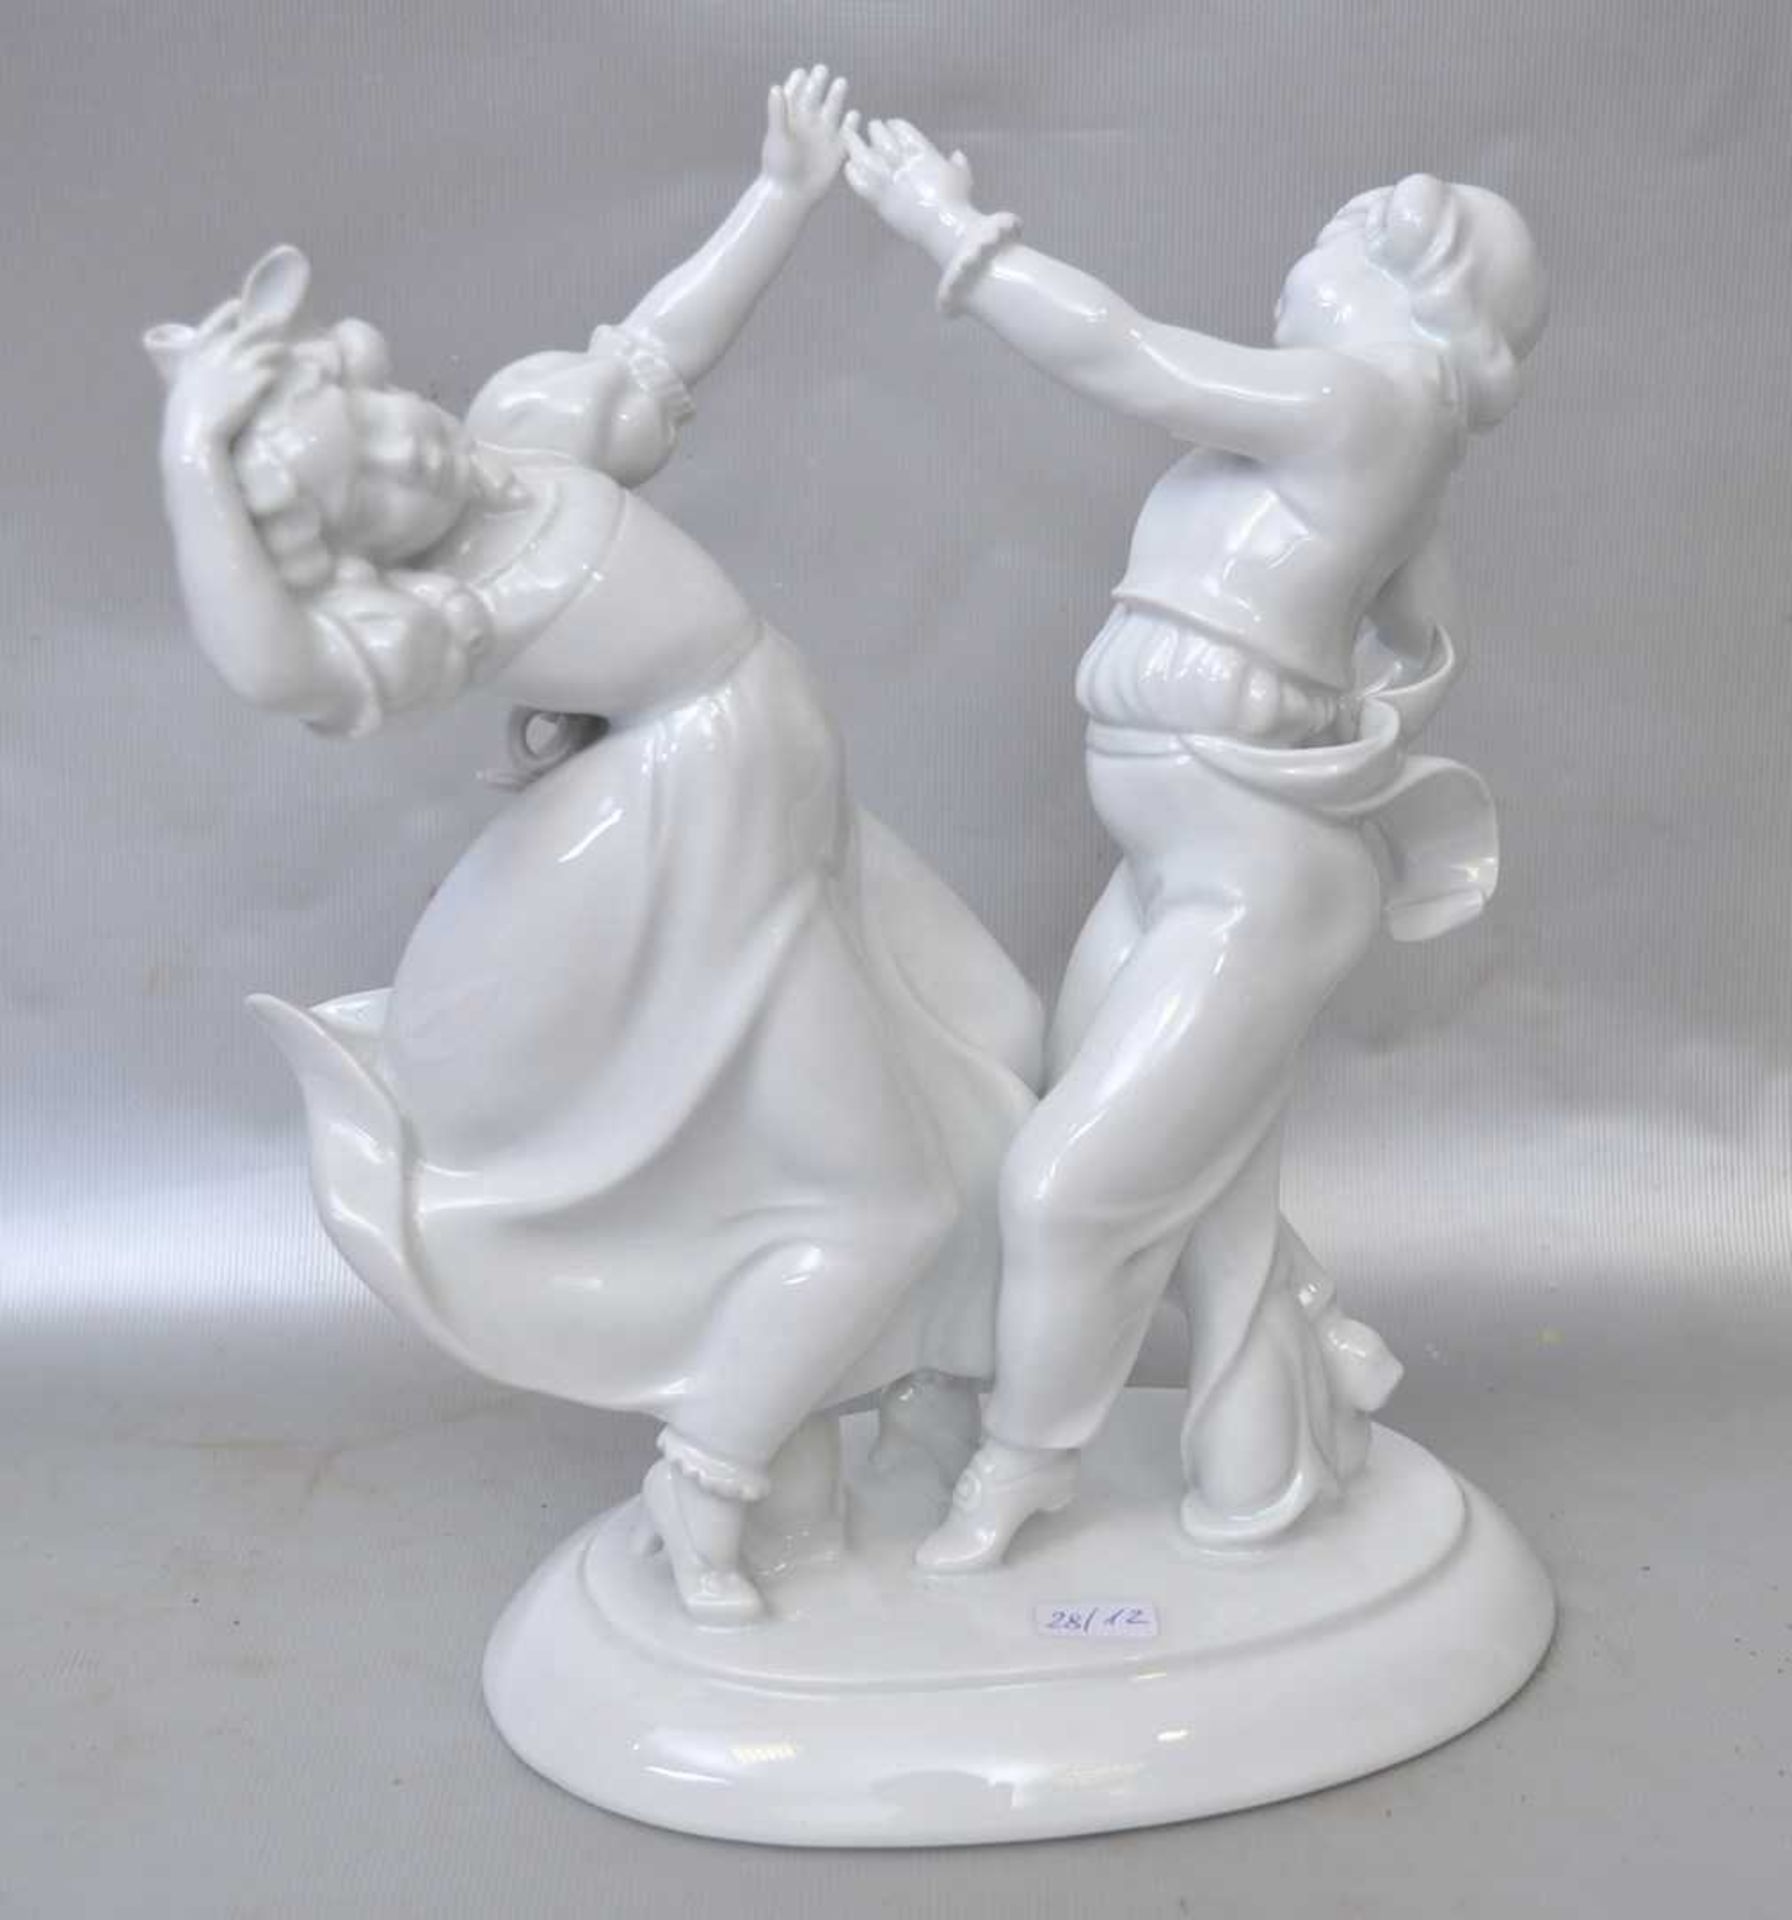 Tanzendes Kinderpaar auf ovalem Sockel stehend, weiß glasiert, H 22 cm, B 20 cm, FM Tettau